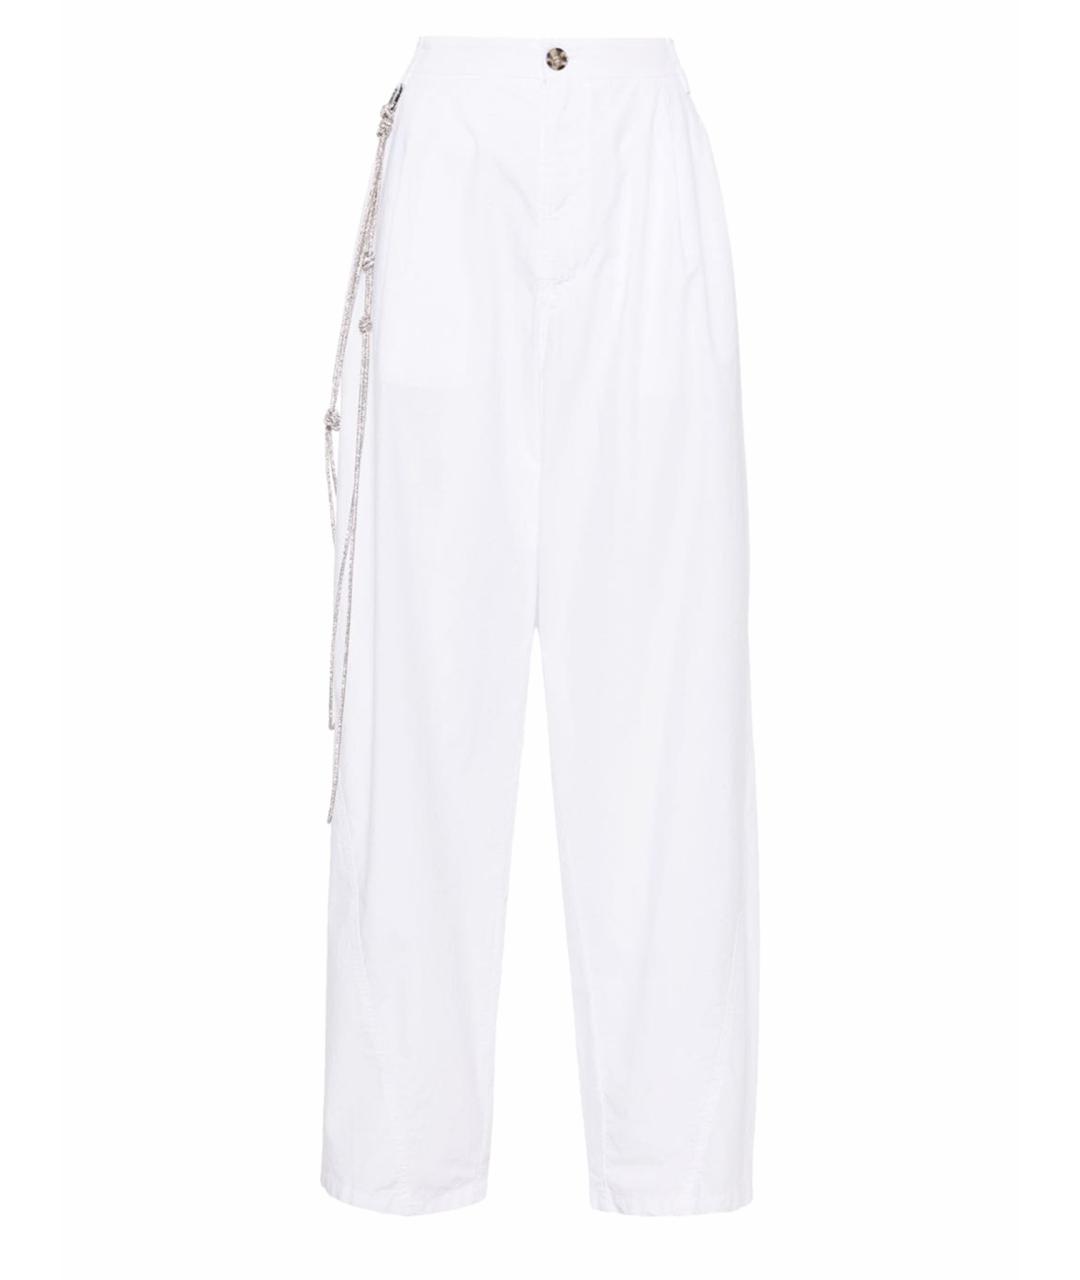 DARKPARK Белые хлопковые брюки широкие, фото 1